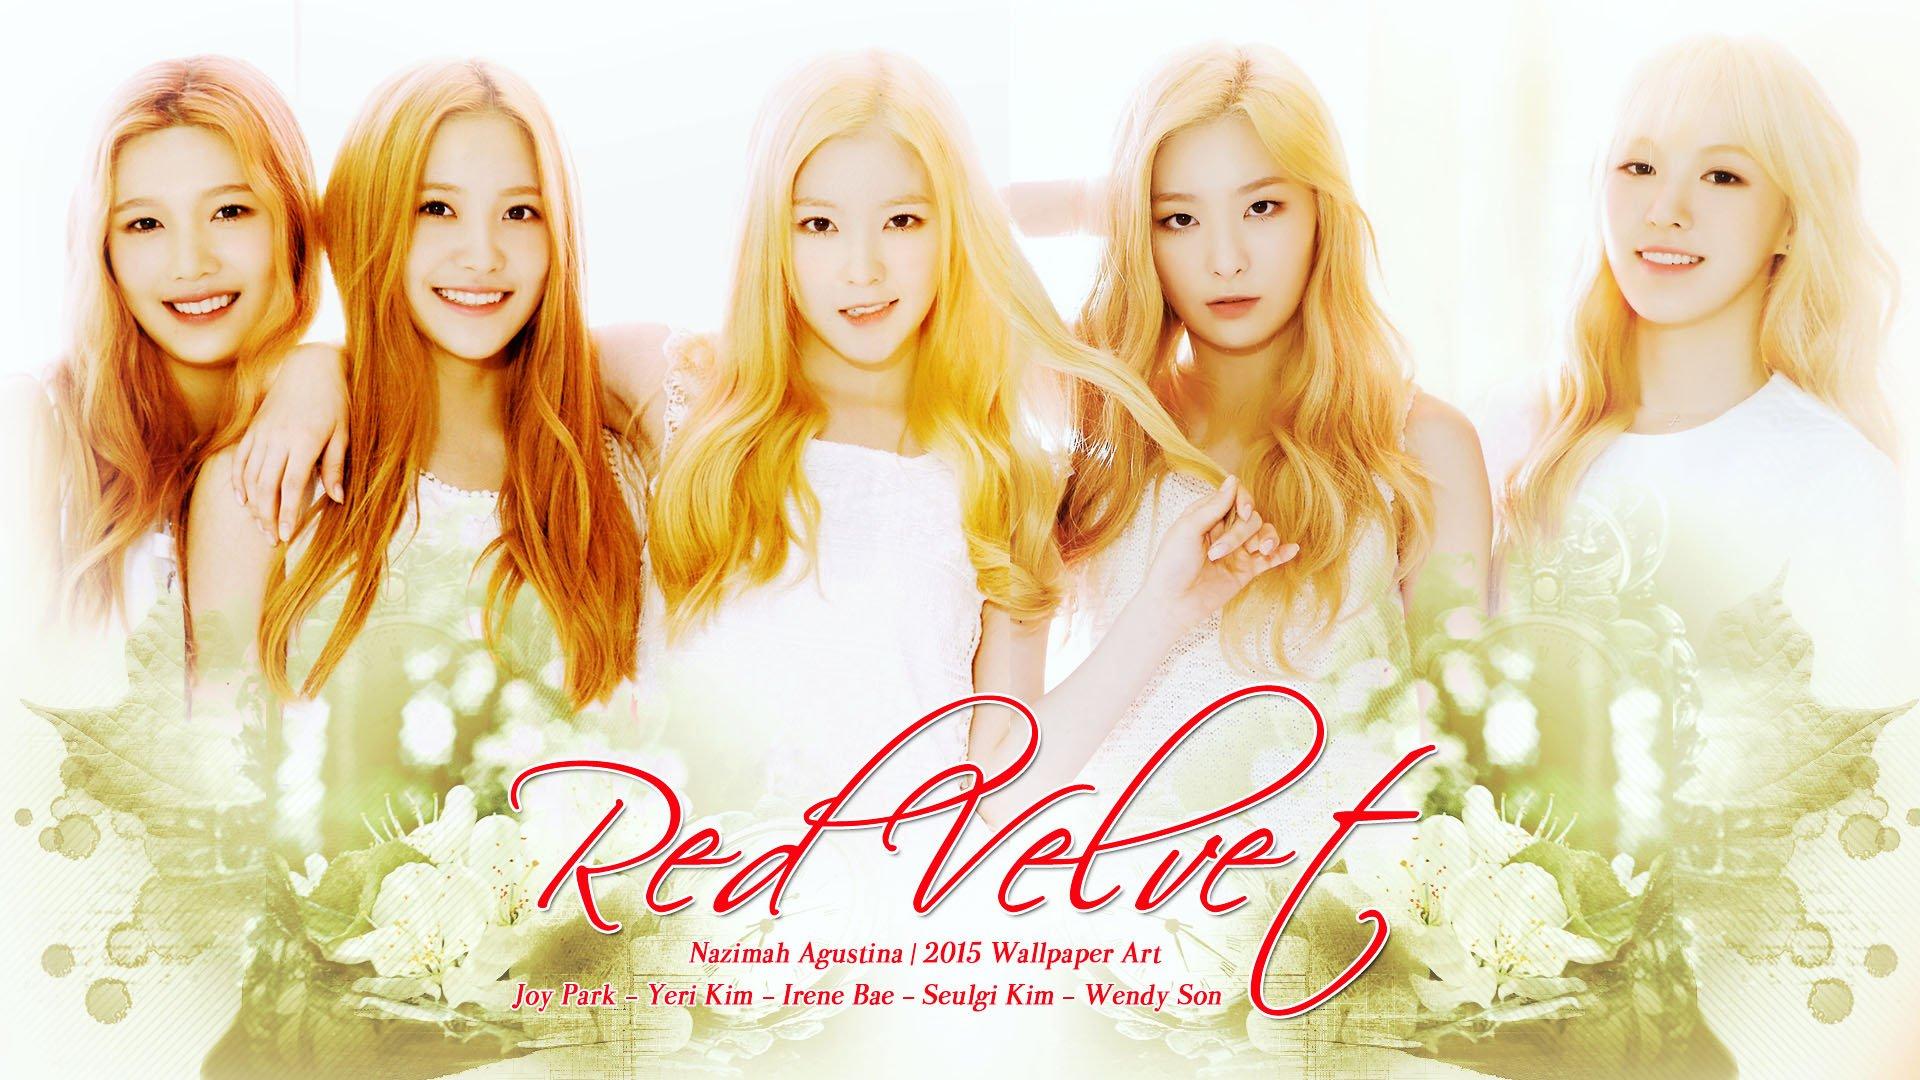 Red Velvet girl power Wallpaper